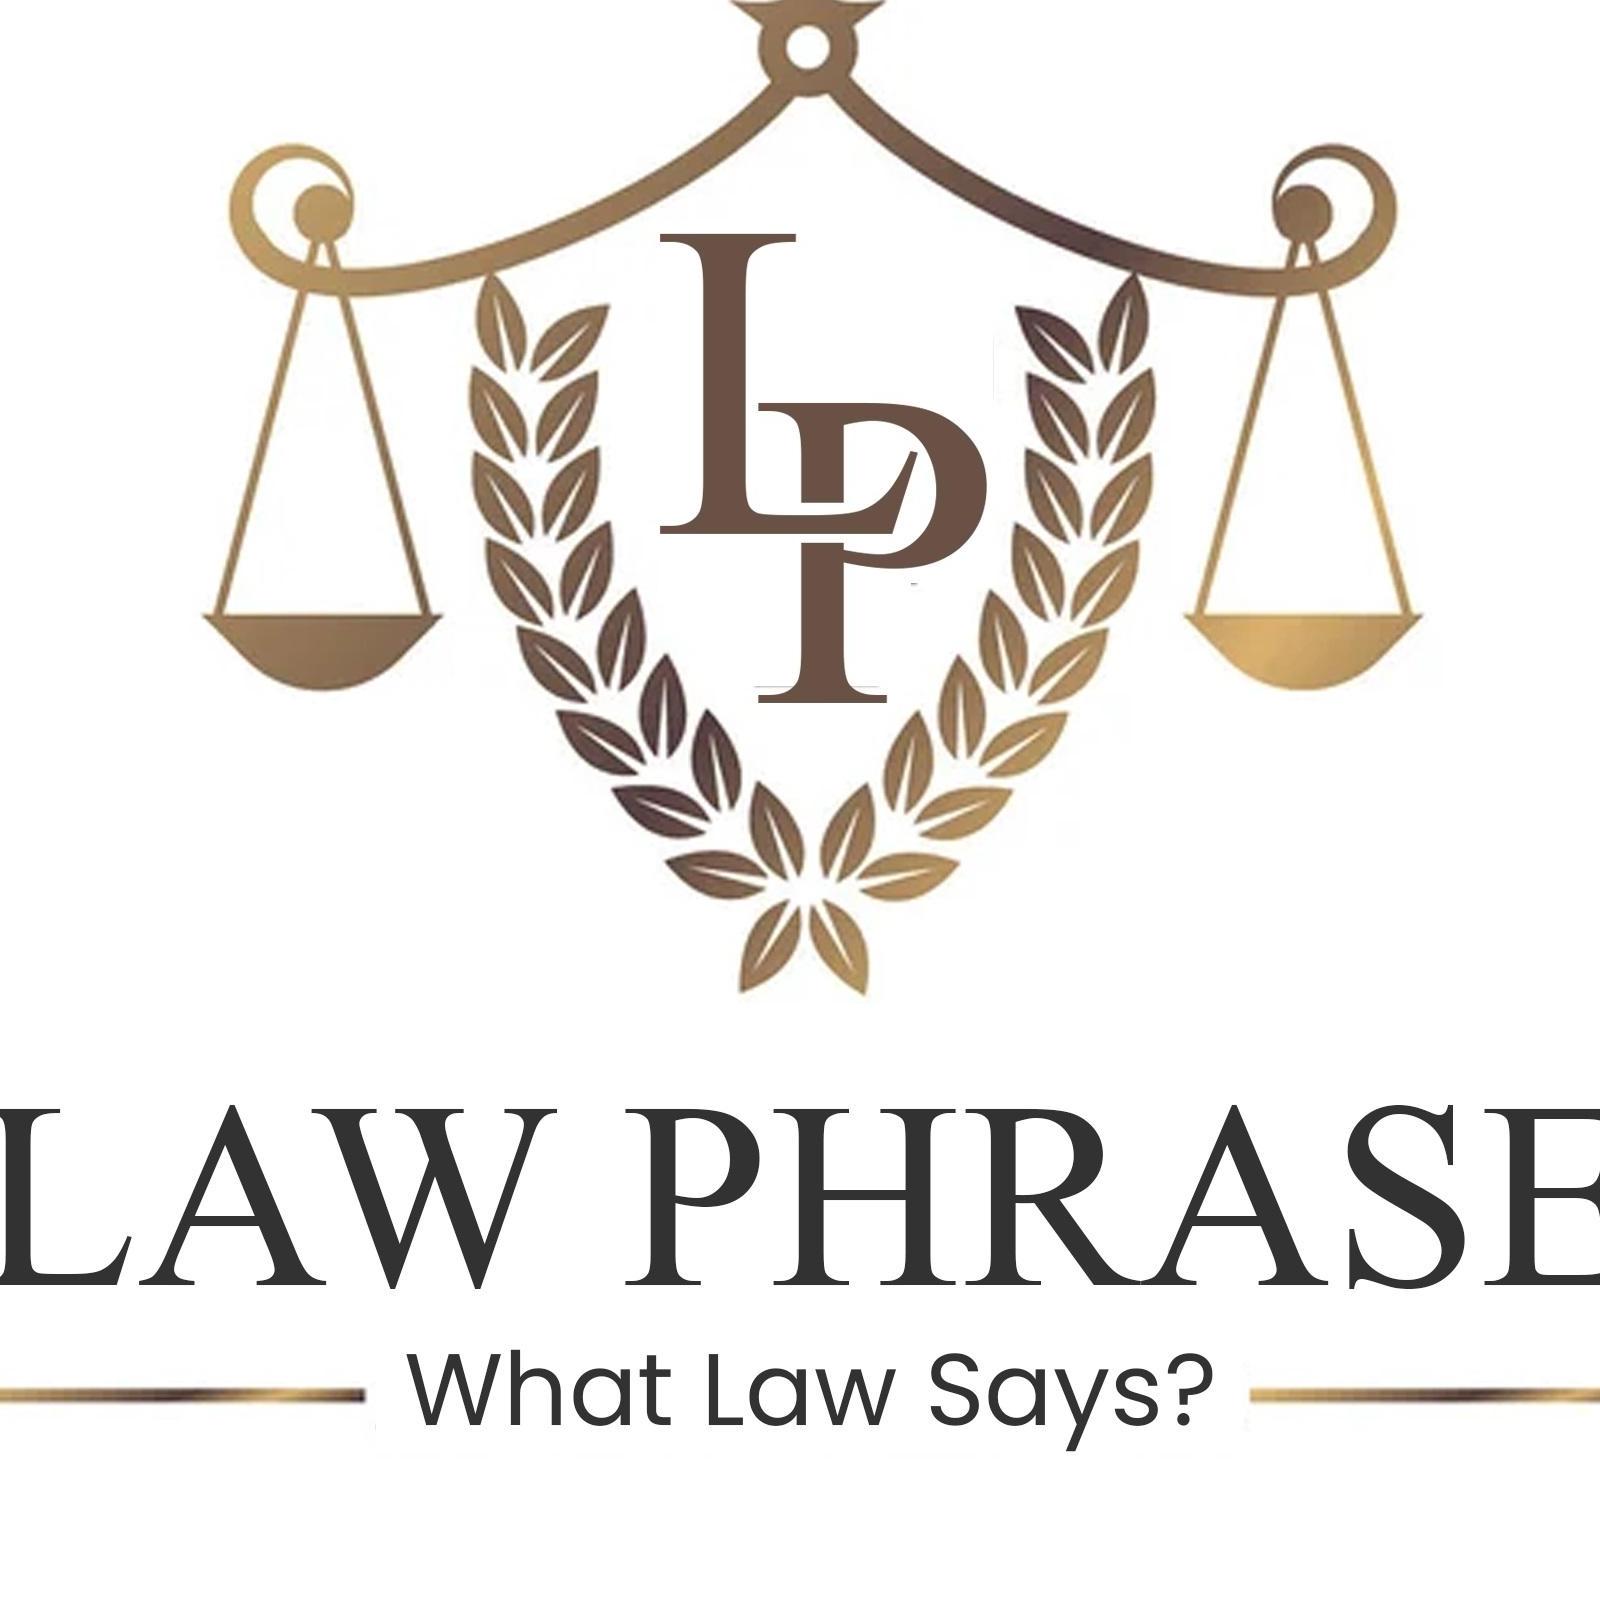 Law Phrase